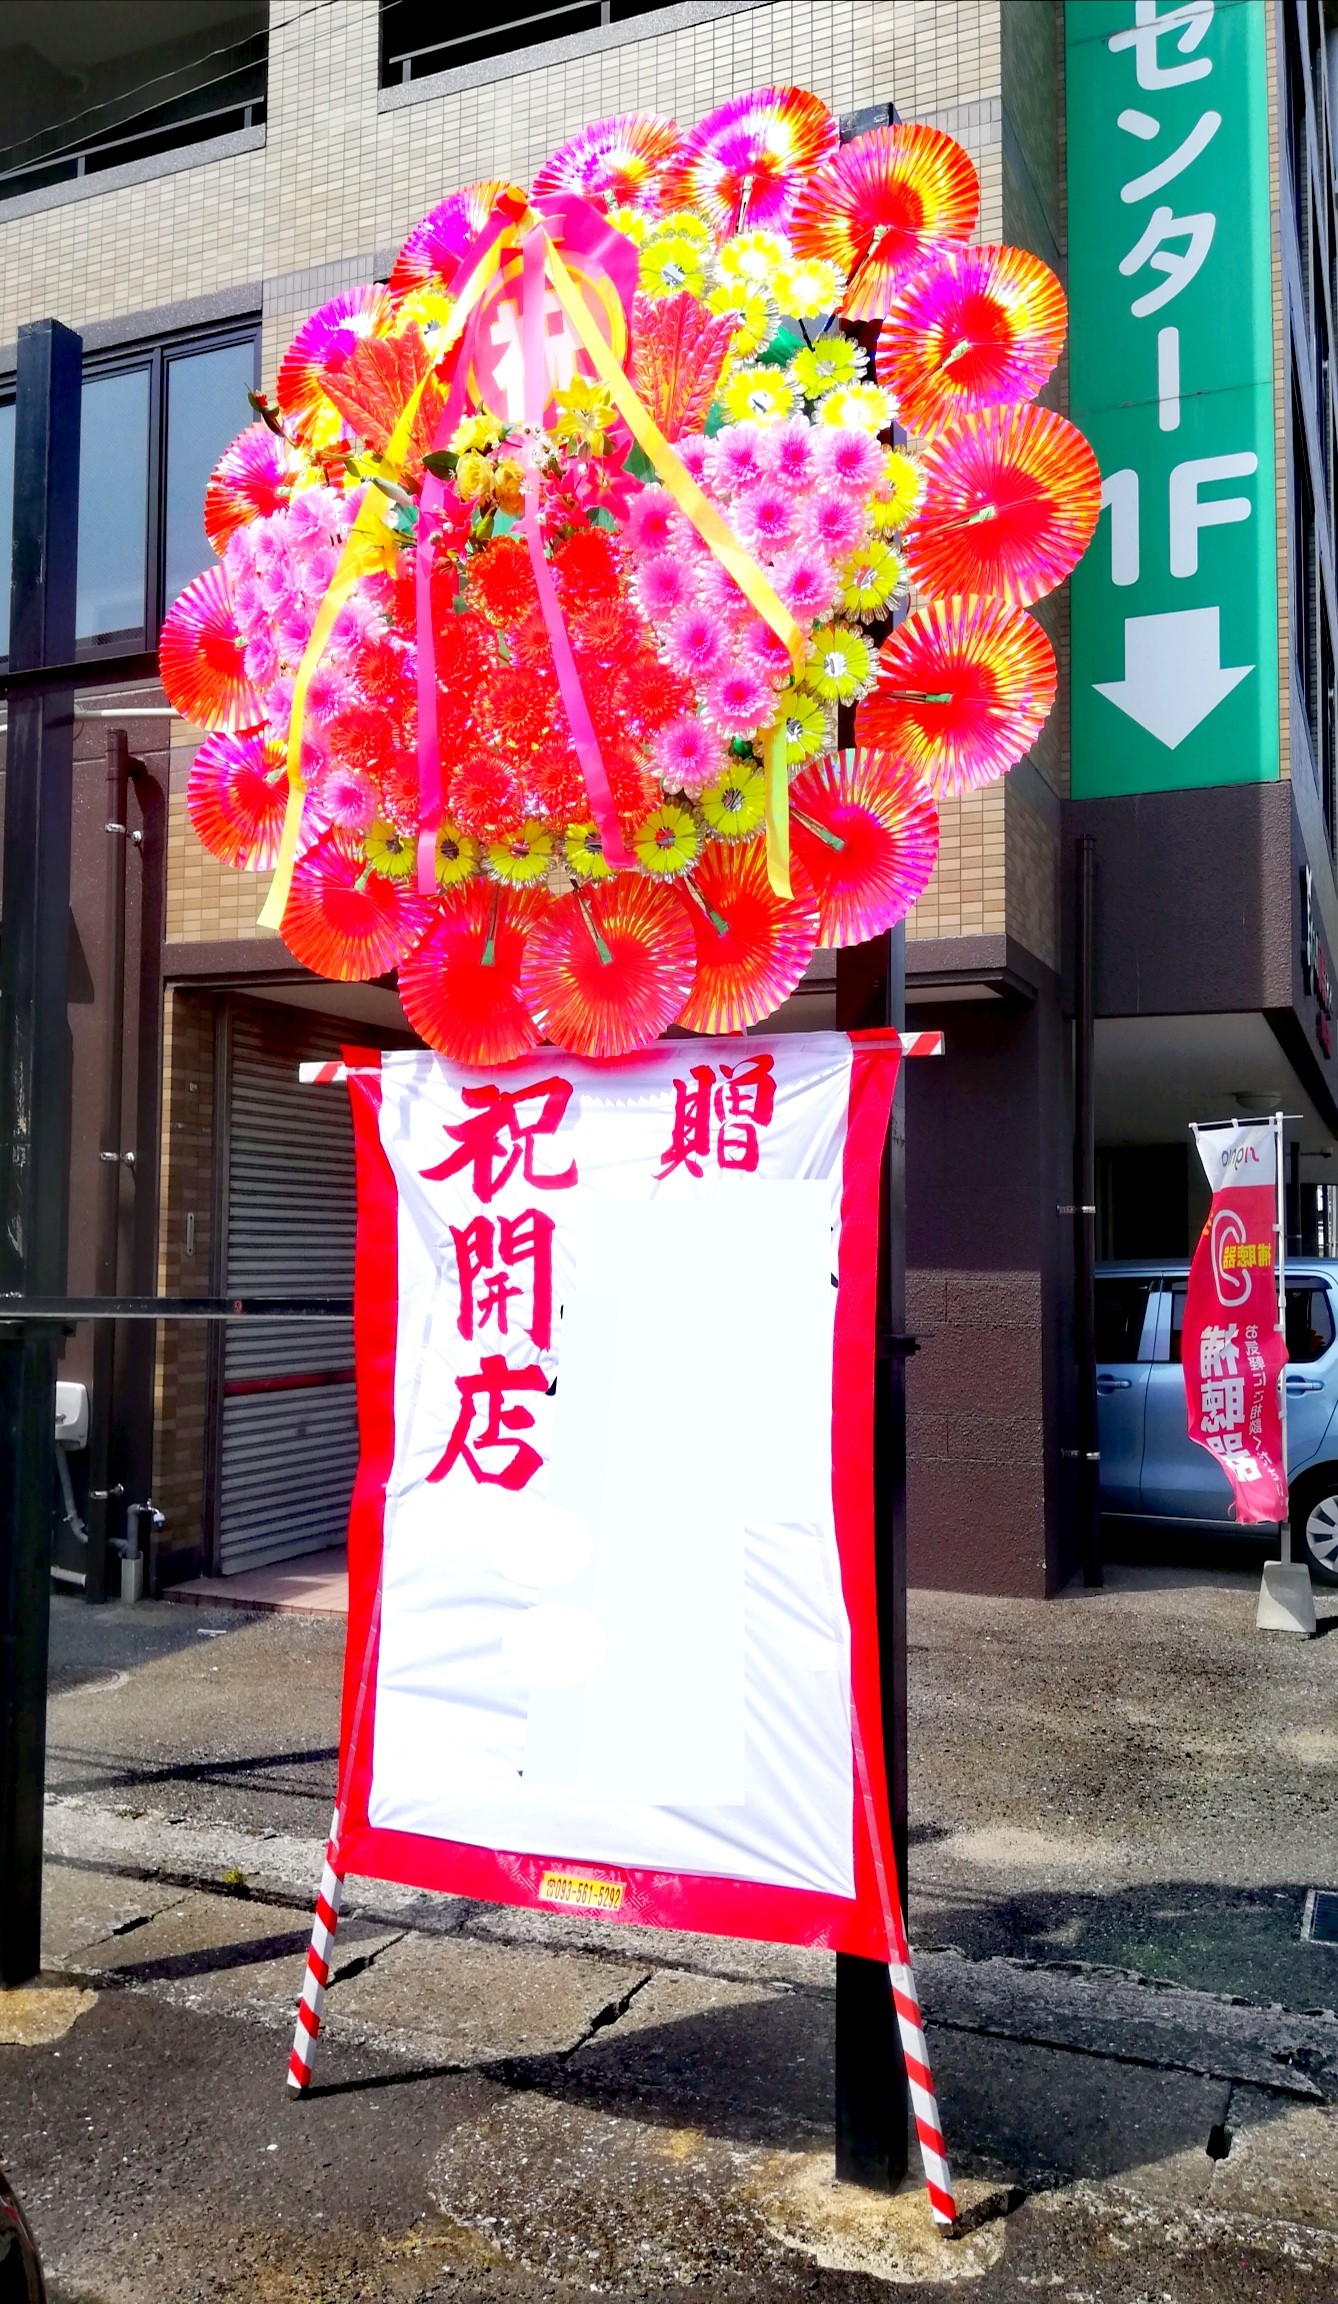 花屋 Hanaya 花輪 花環 はなわ 福岡県北九州 市小倉北区のフラワーショップです フラワースタンド バルーン フラワーアレンジメント 胡蝶蘭などギフト商品も取り扱っております